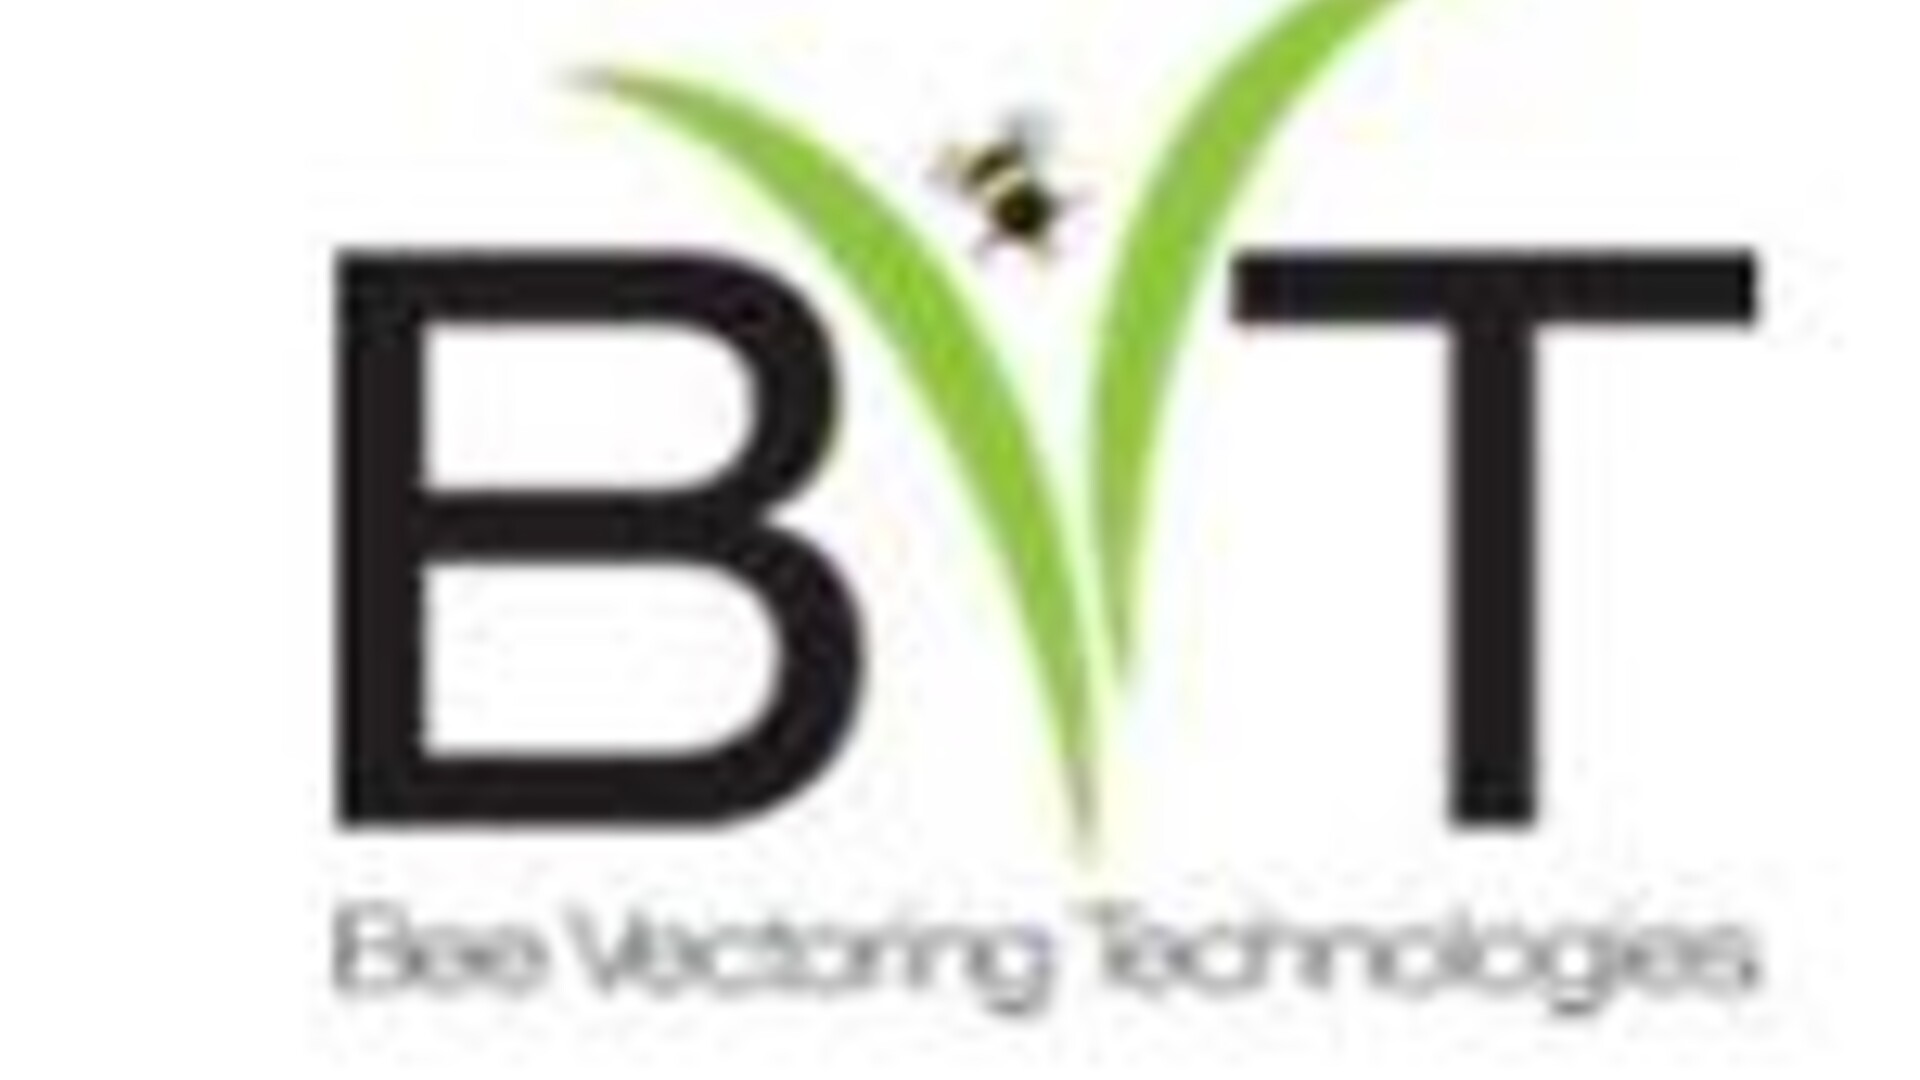 Bee Vectoring Technologies Pt 1